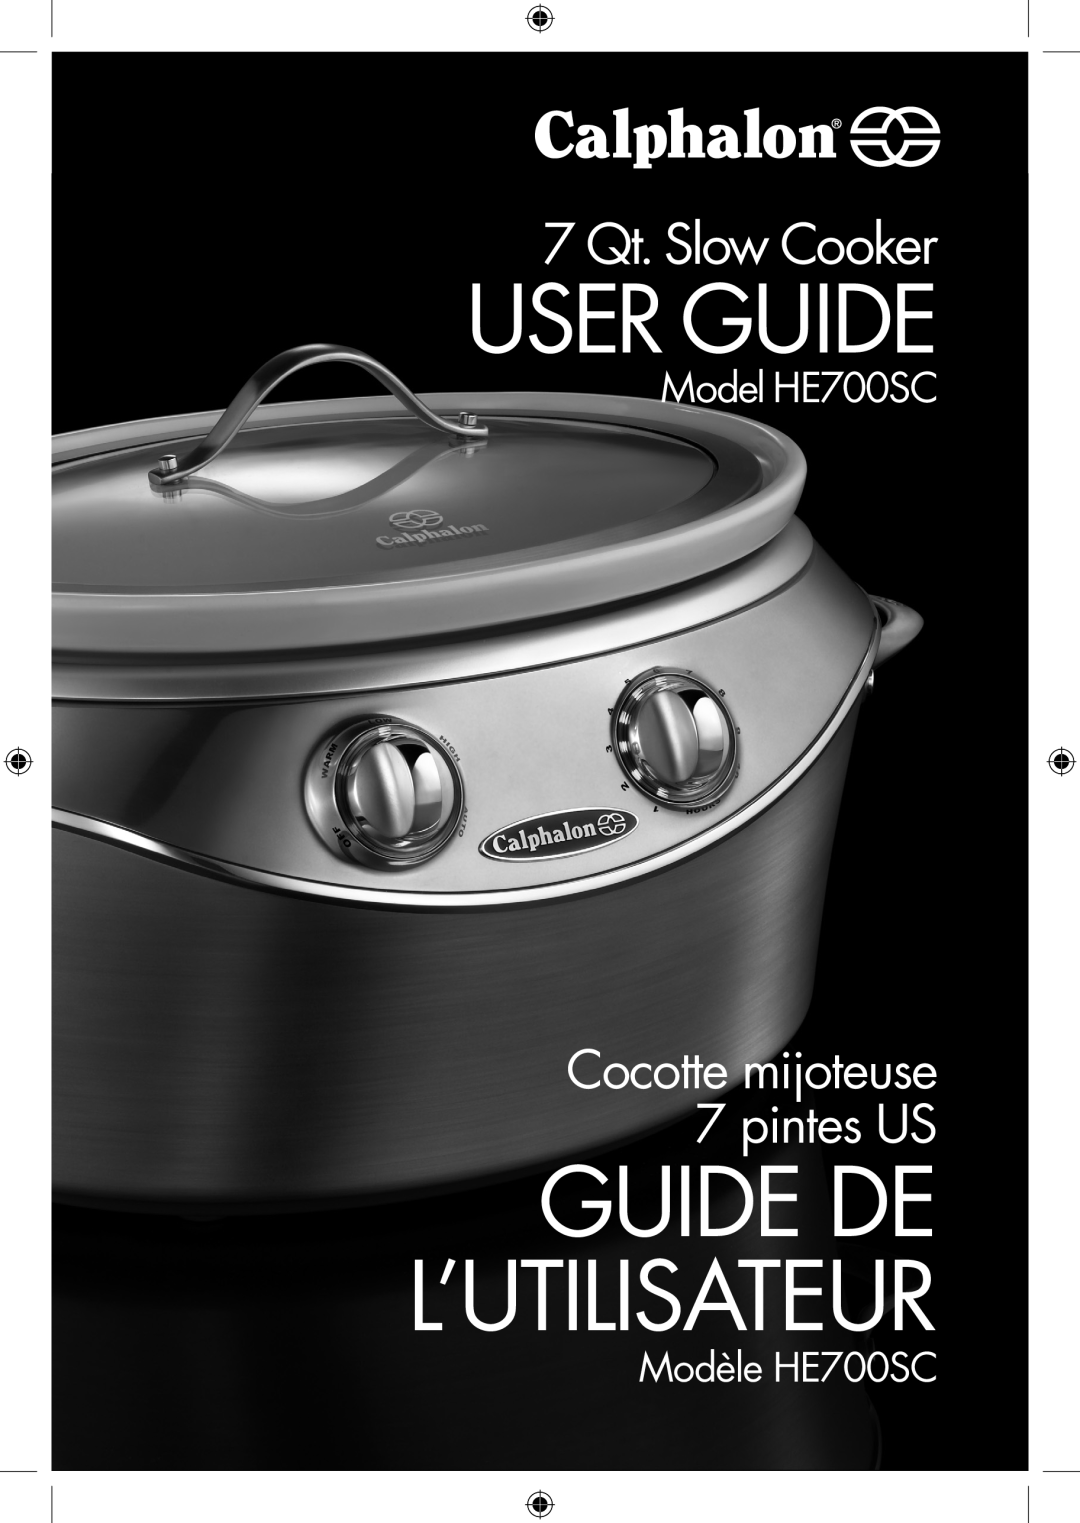 Calphalon manual Modèle HE700SC, User Guide, Guide De L’Utilisateur, 7 Qt. Slow Cooker, Cocotte mijoteuse 7 pintes US 